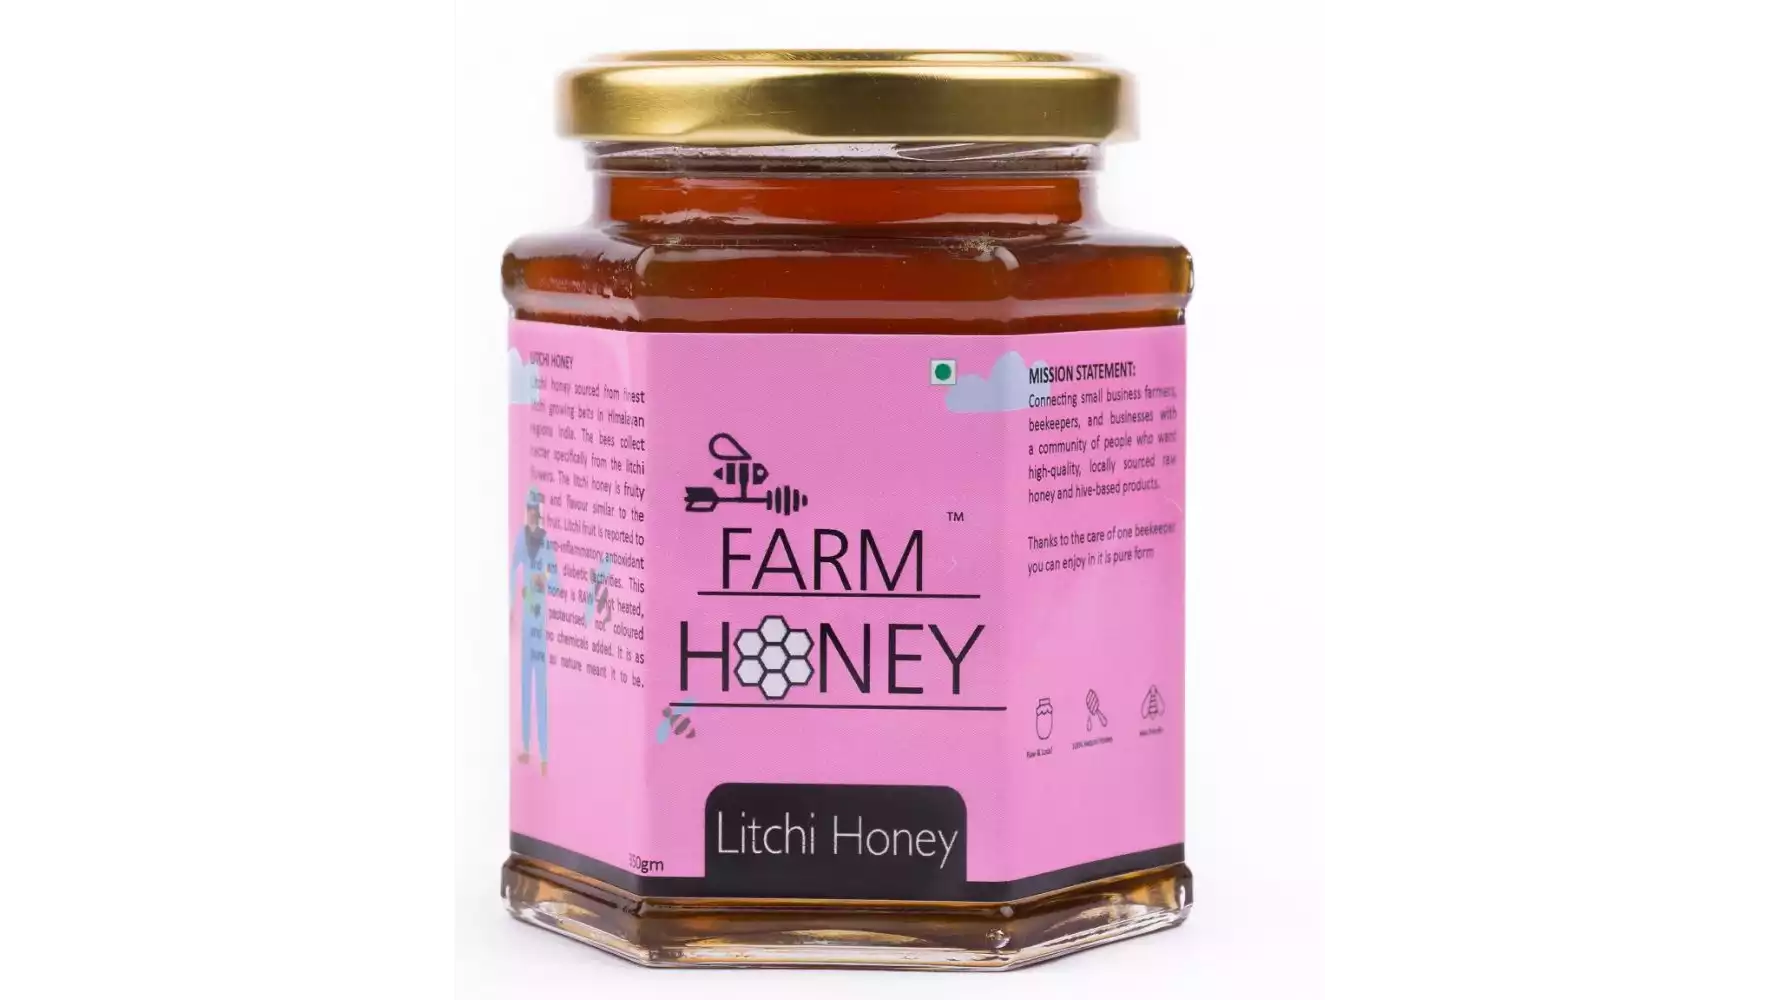 Farm Honey Litchi Honey (350g)